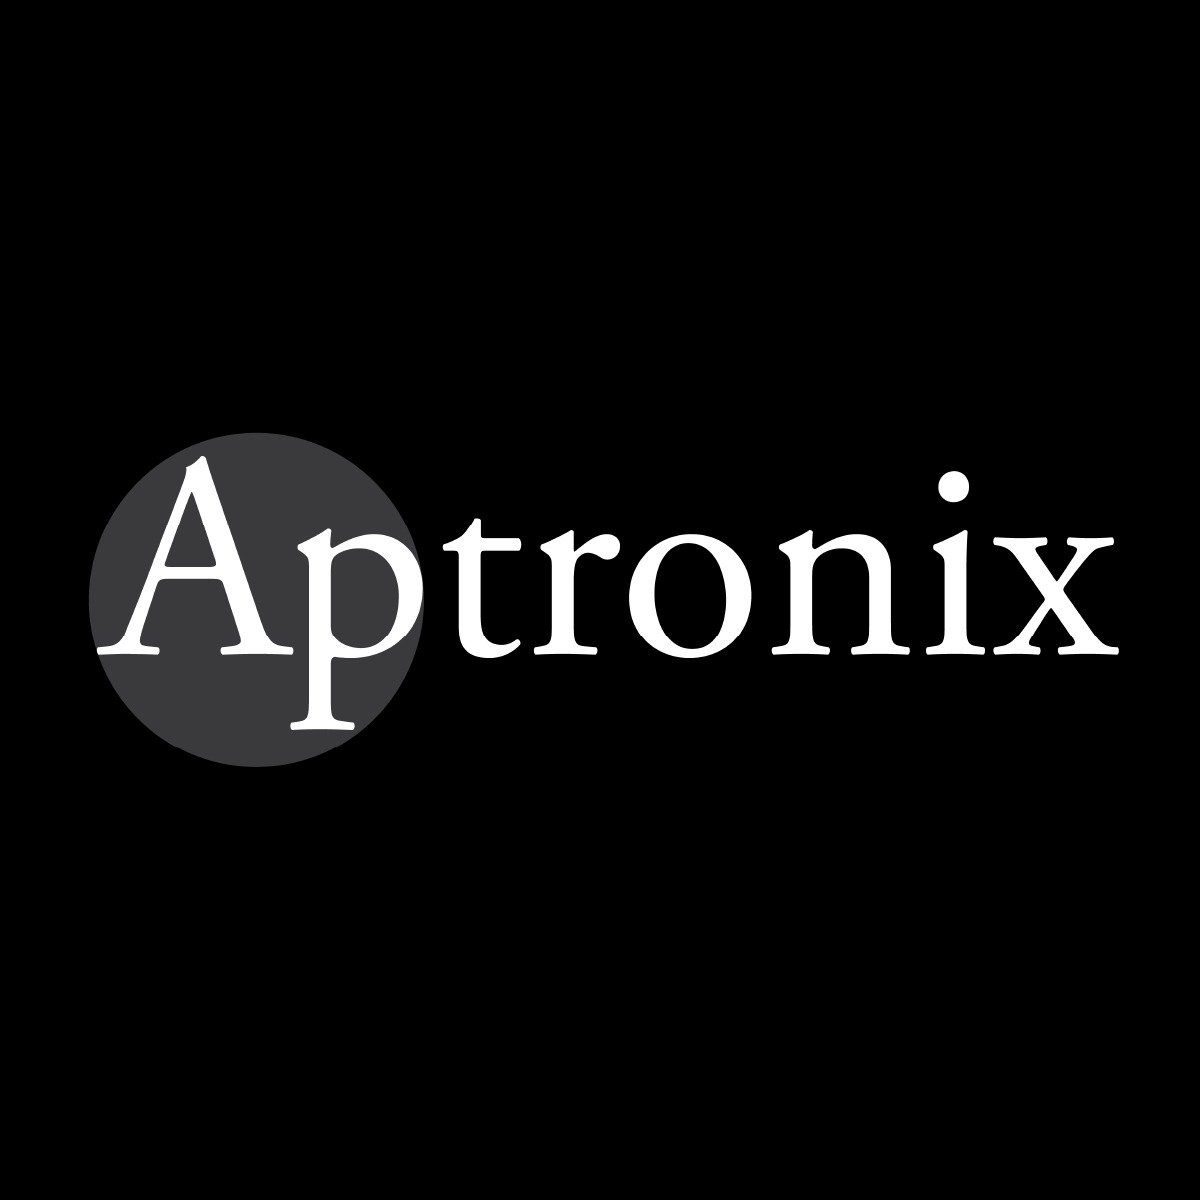 Aptronix, Next Galleria Malls